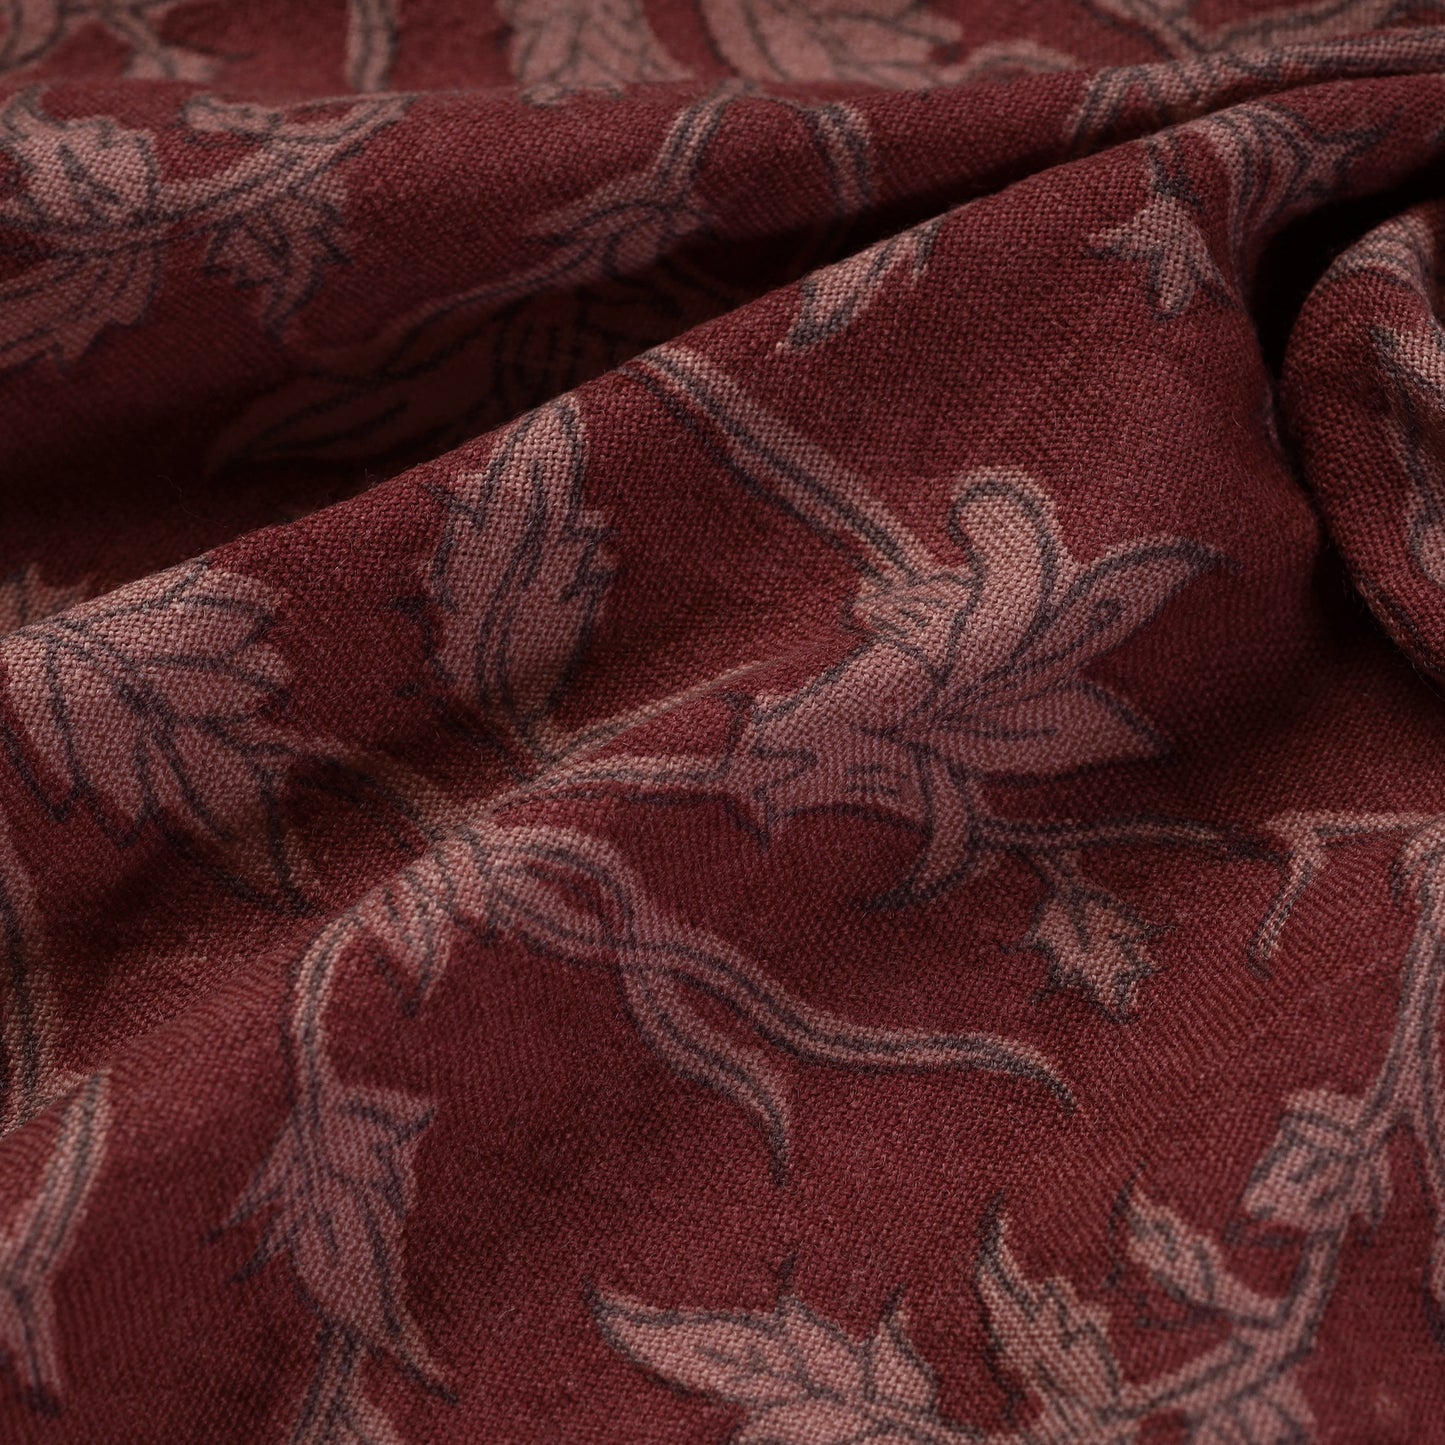 Red - Pedana Kalamkari Block Printed Handwoven Merino Wool Fabric